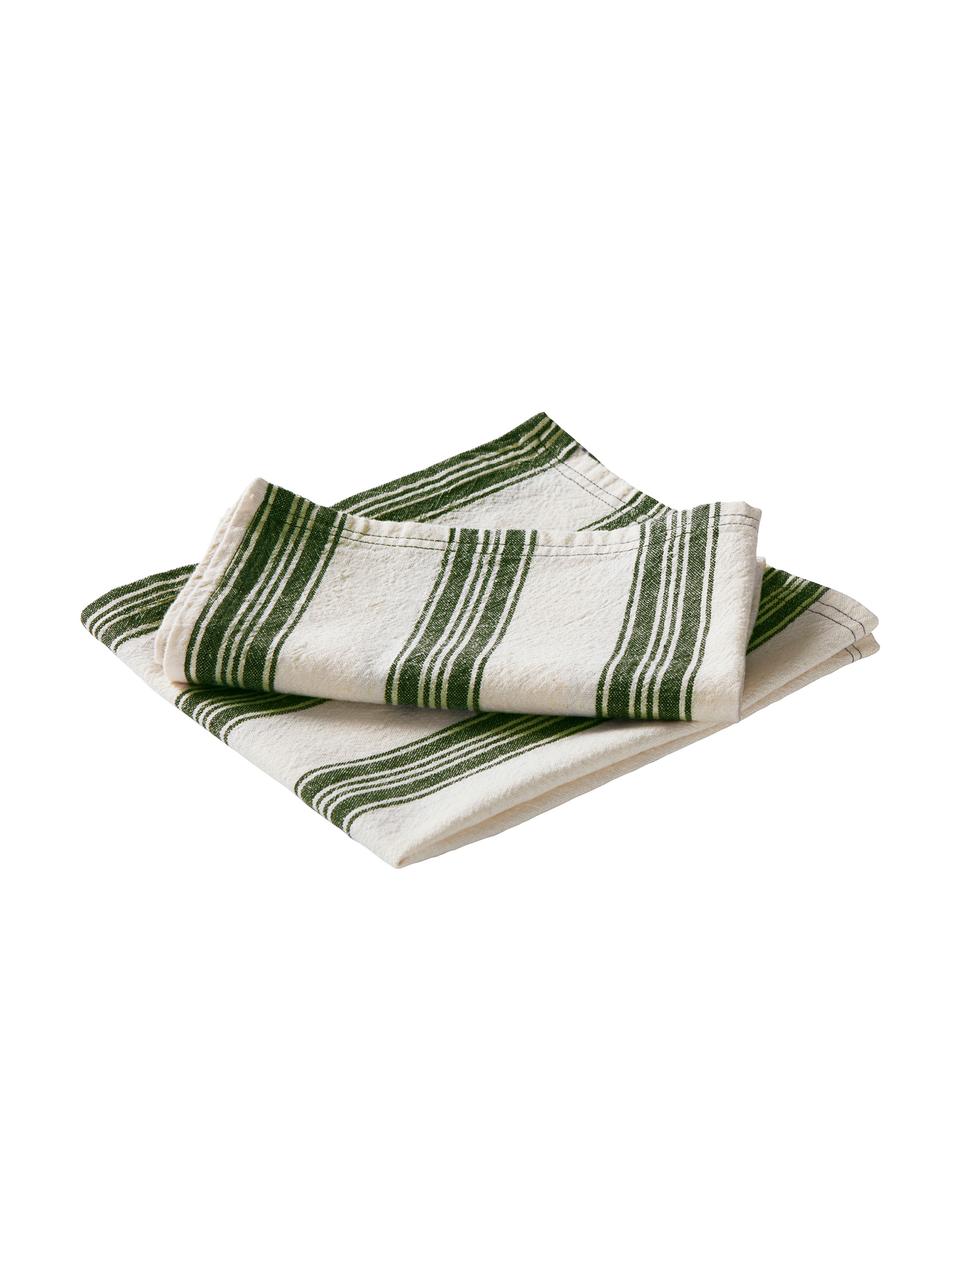 Serviettes de table en coton/lin Abigail, 2 pièces, Blanc cassé, vert